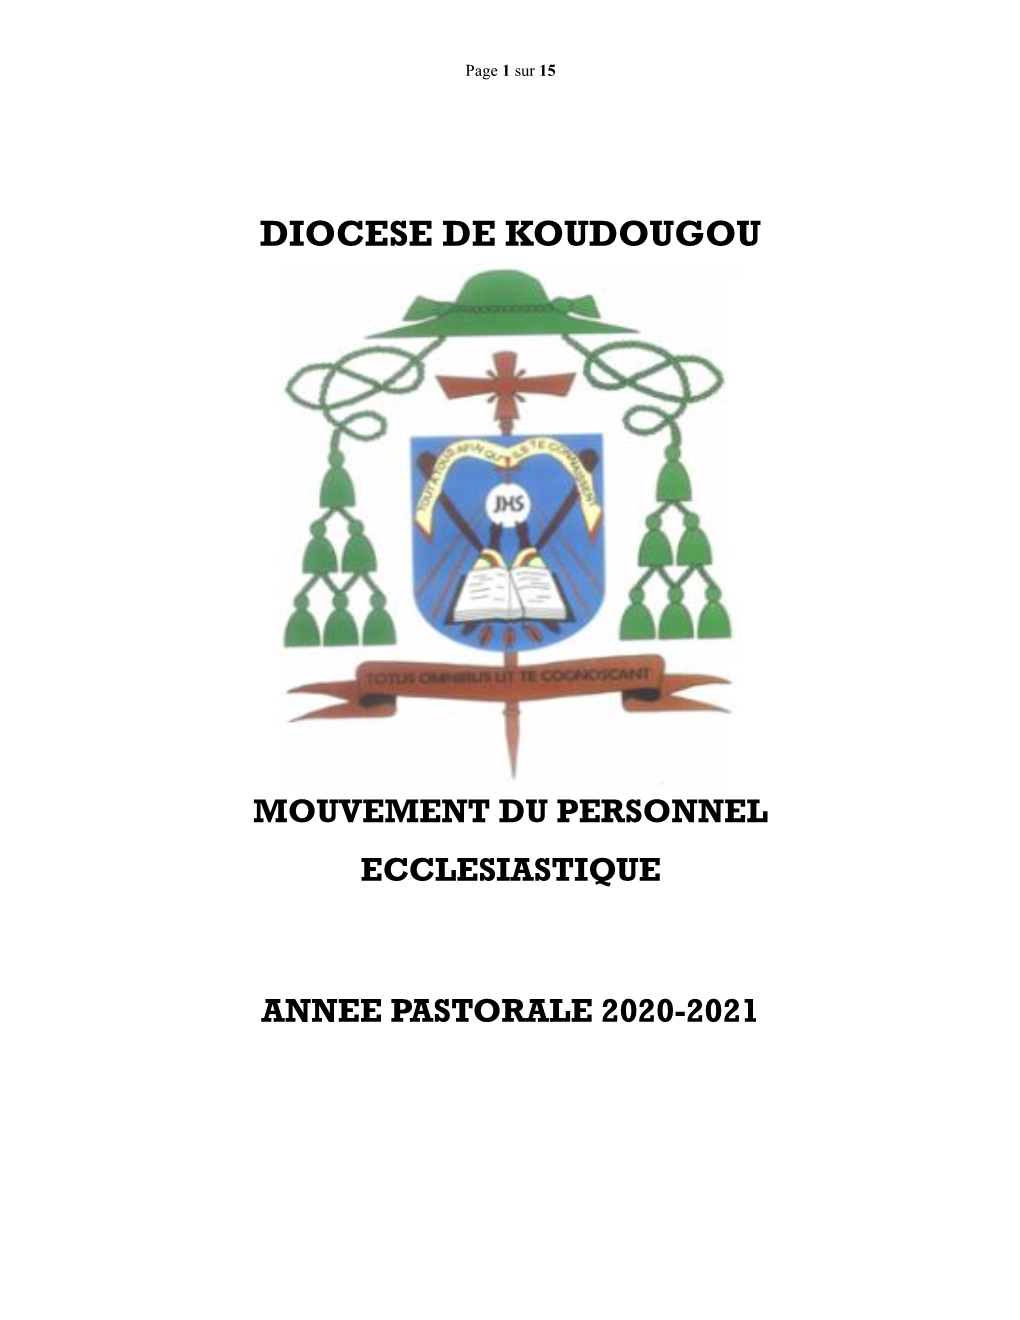 Mouvement Du Personnel Ecclesiastique Annee Pastorale 2020-2021